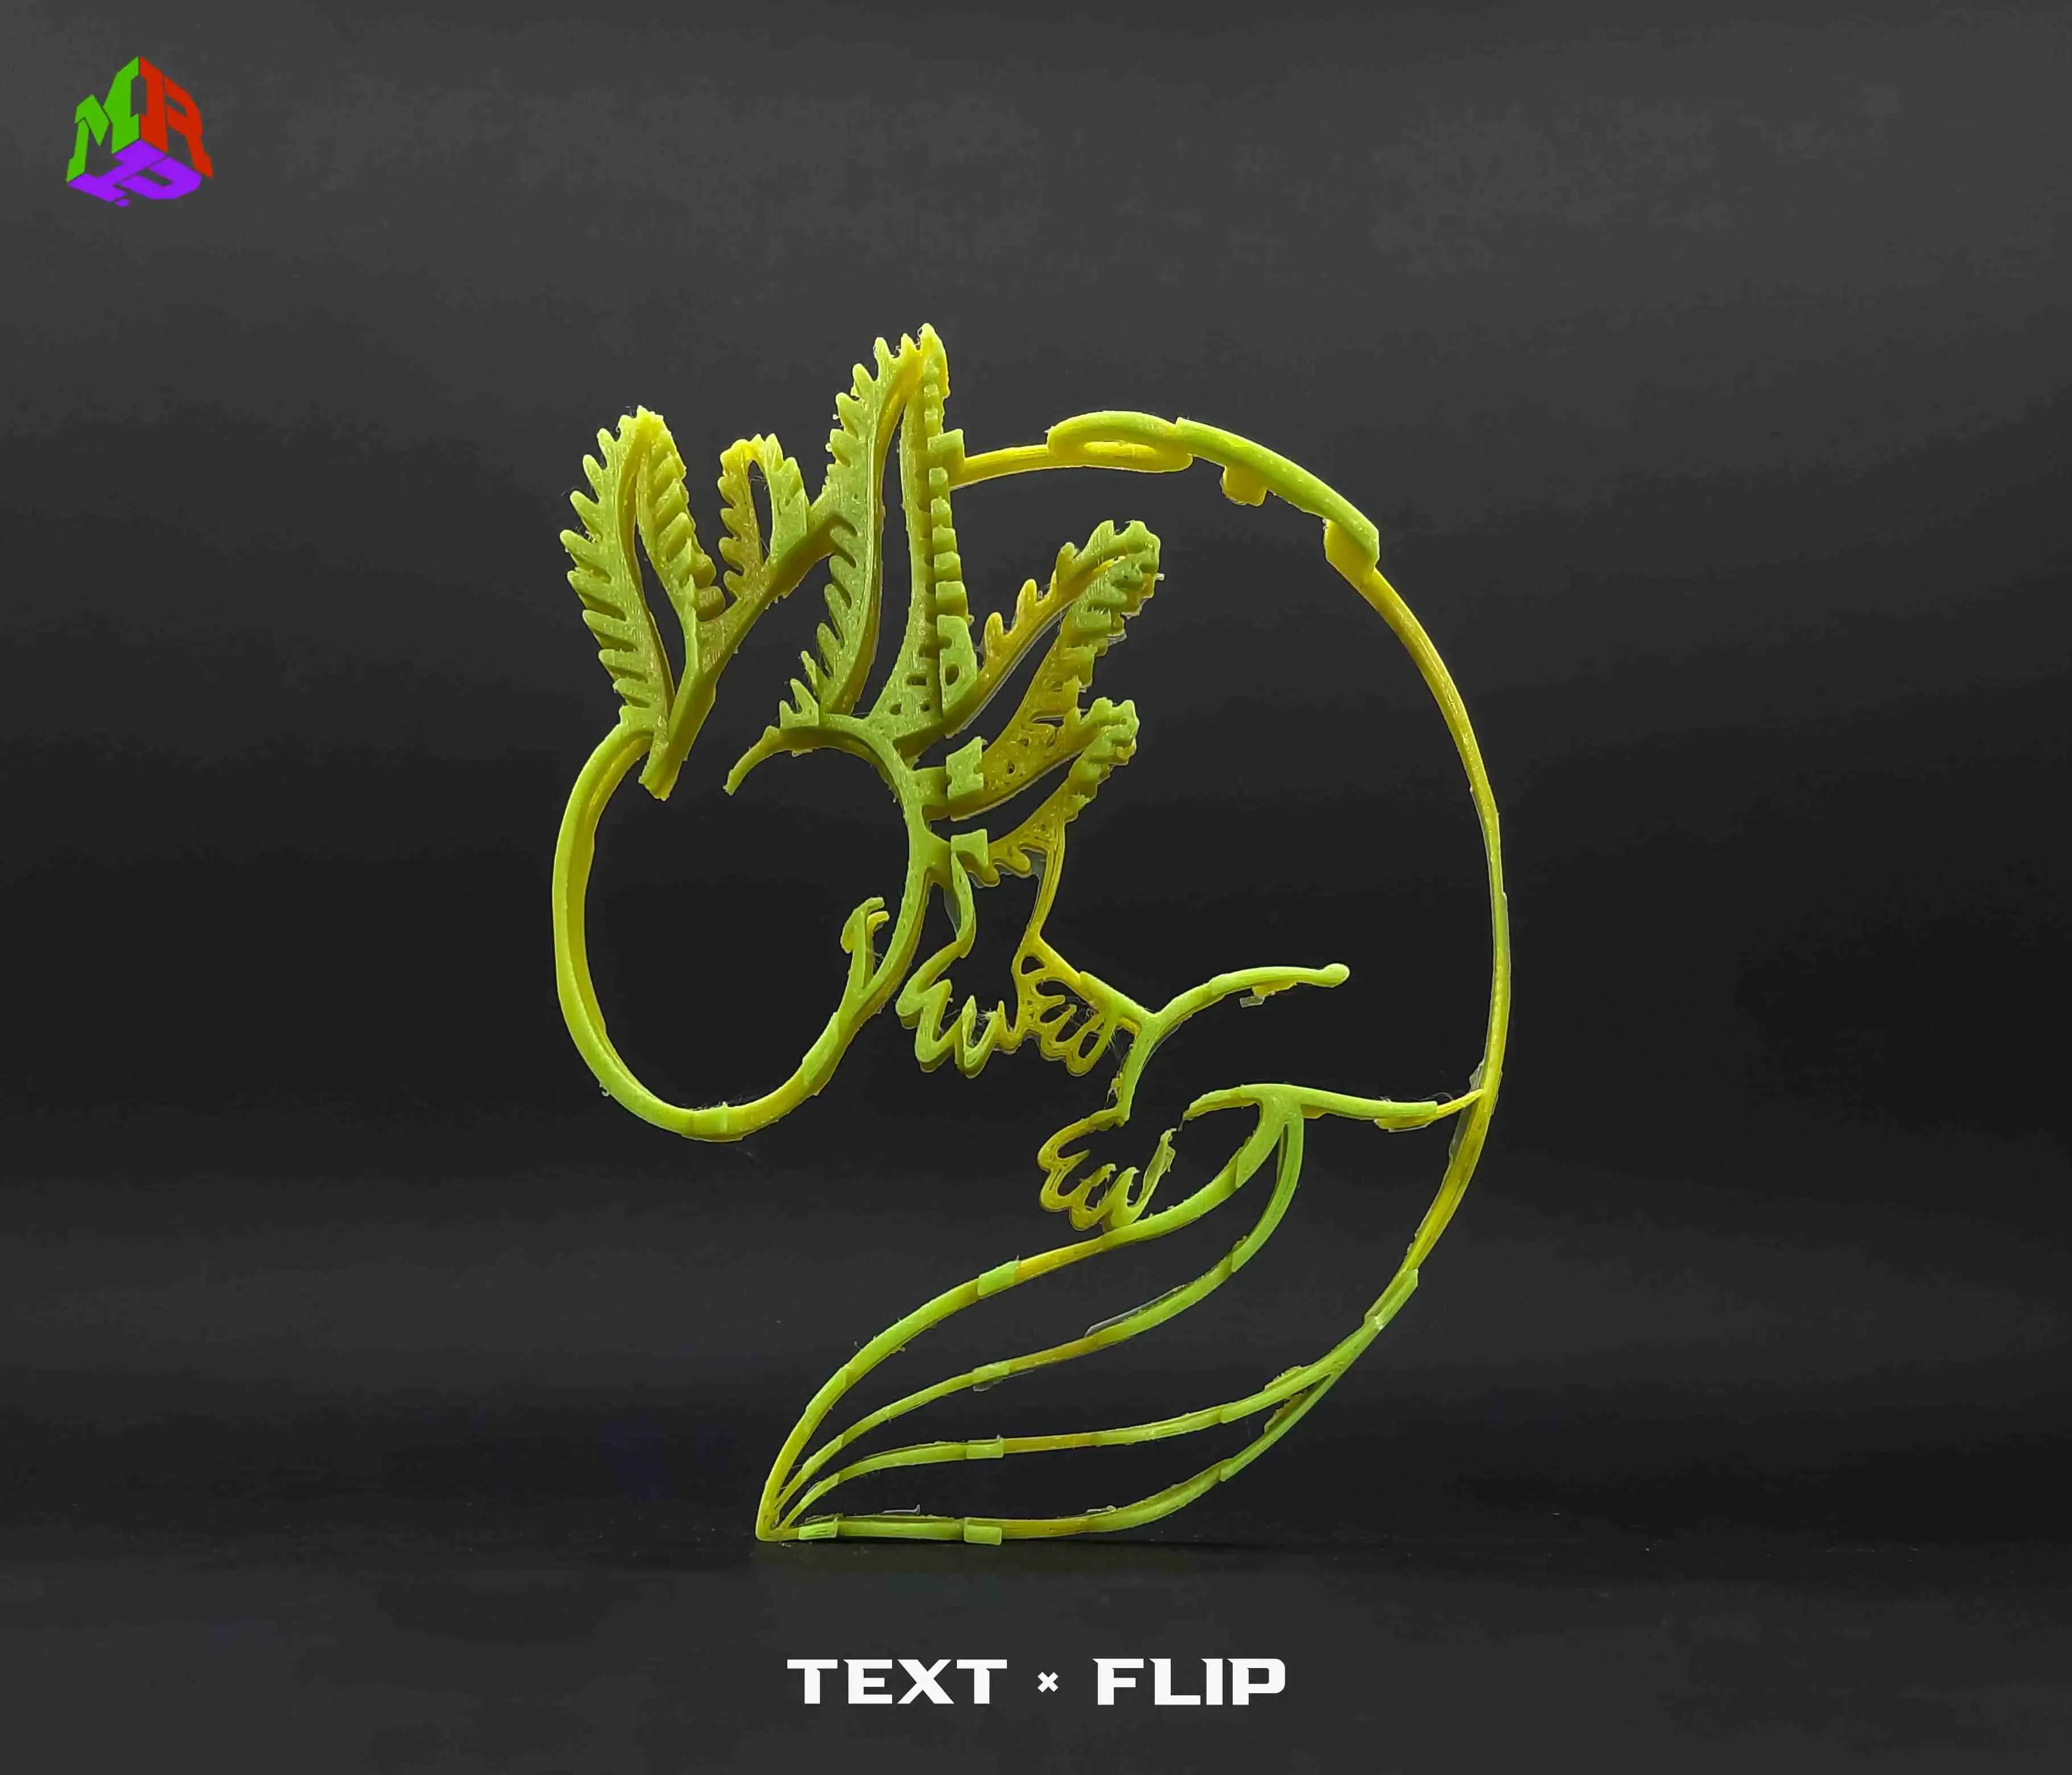 Text Flip - Axolotl 3.0